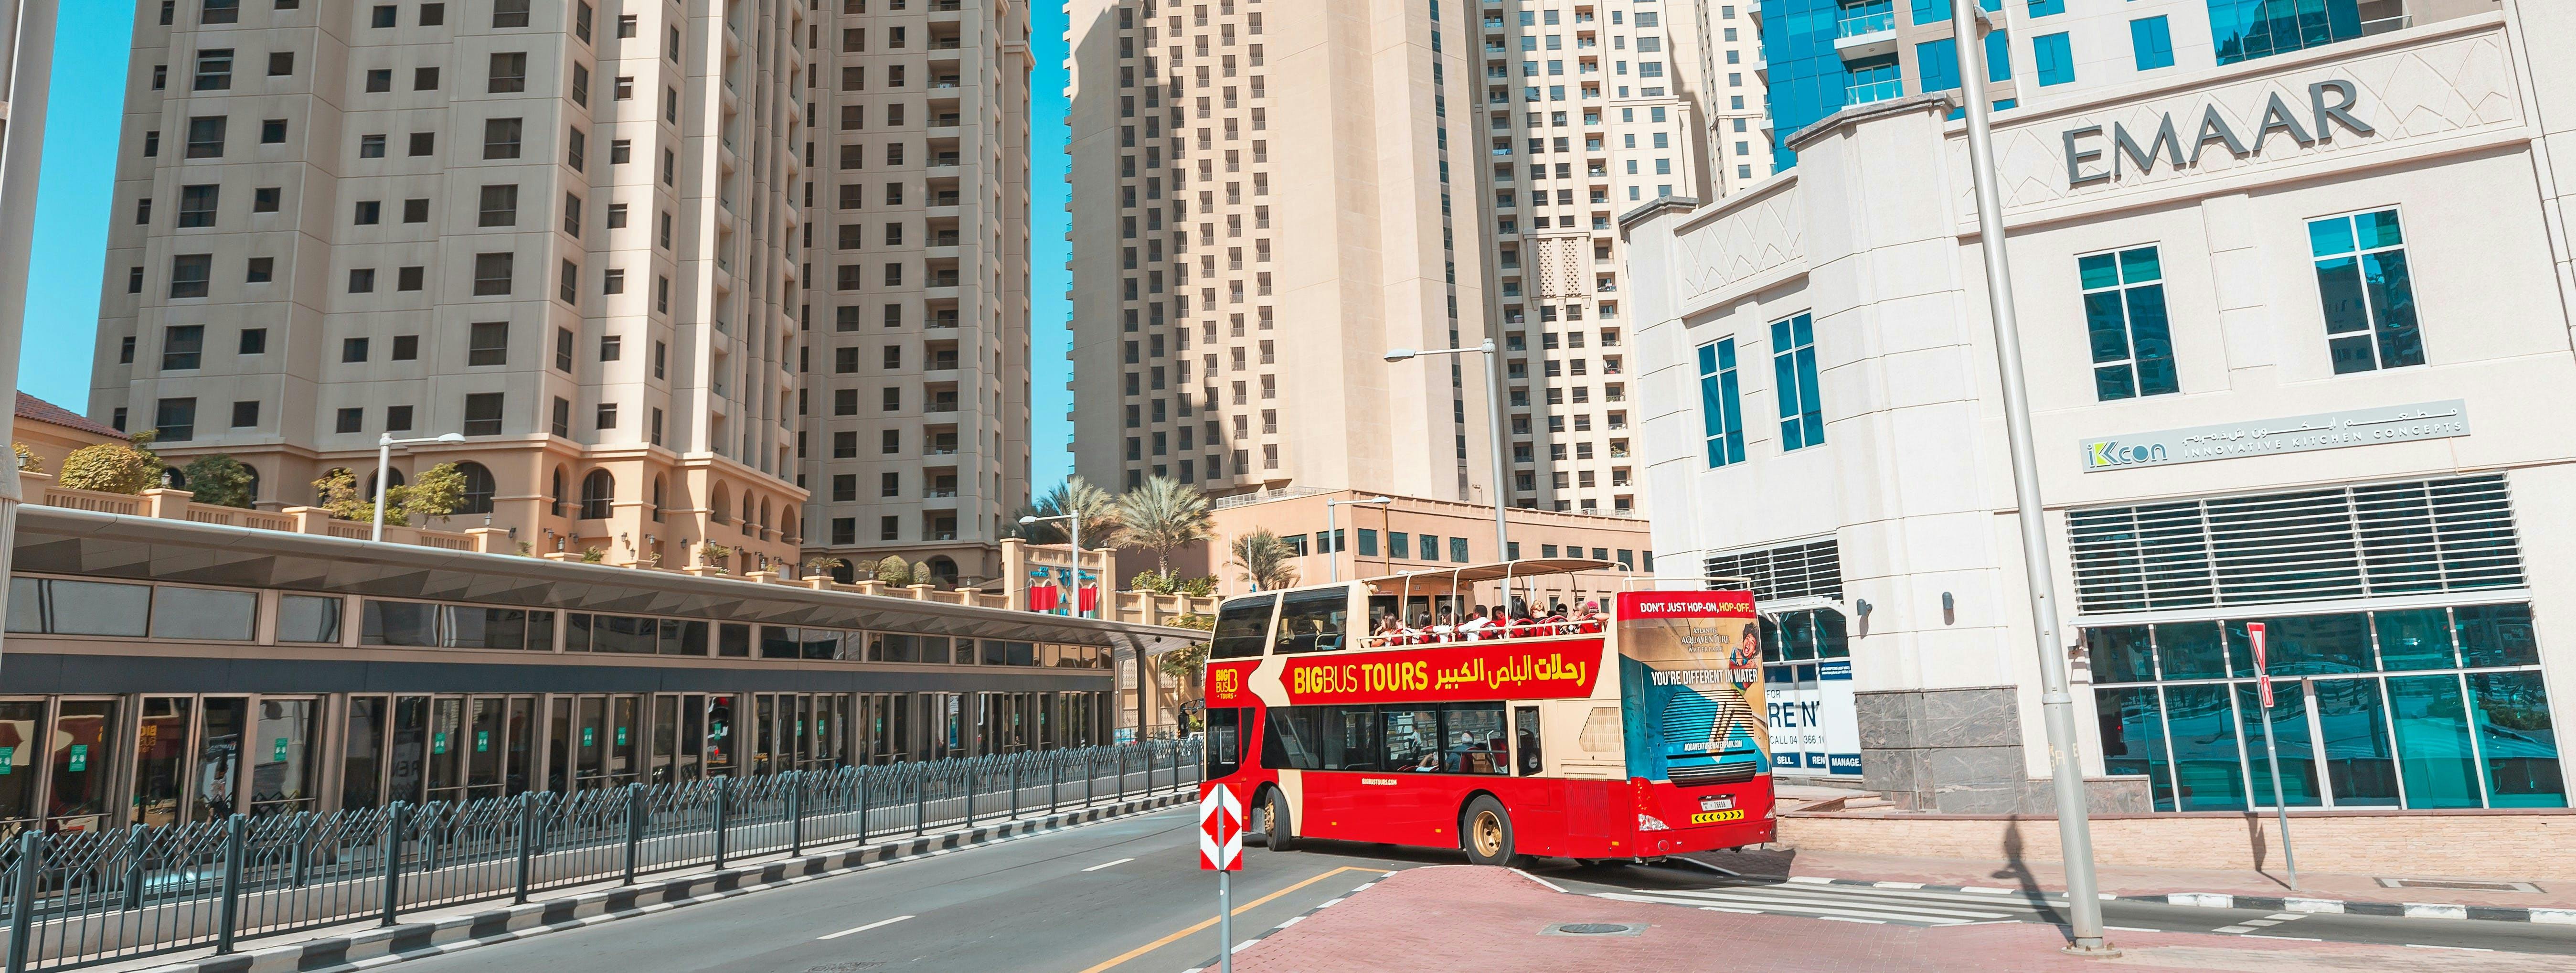 Big Bus tour of Dubai